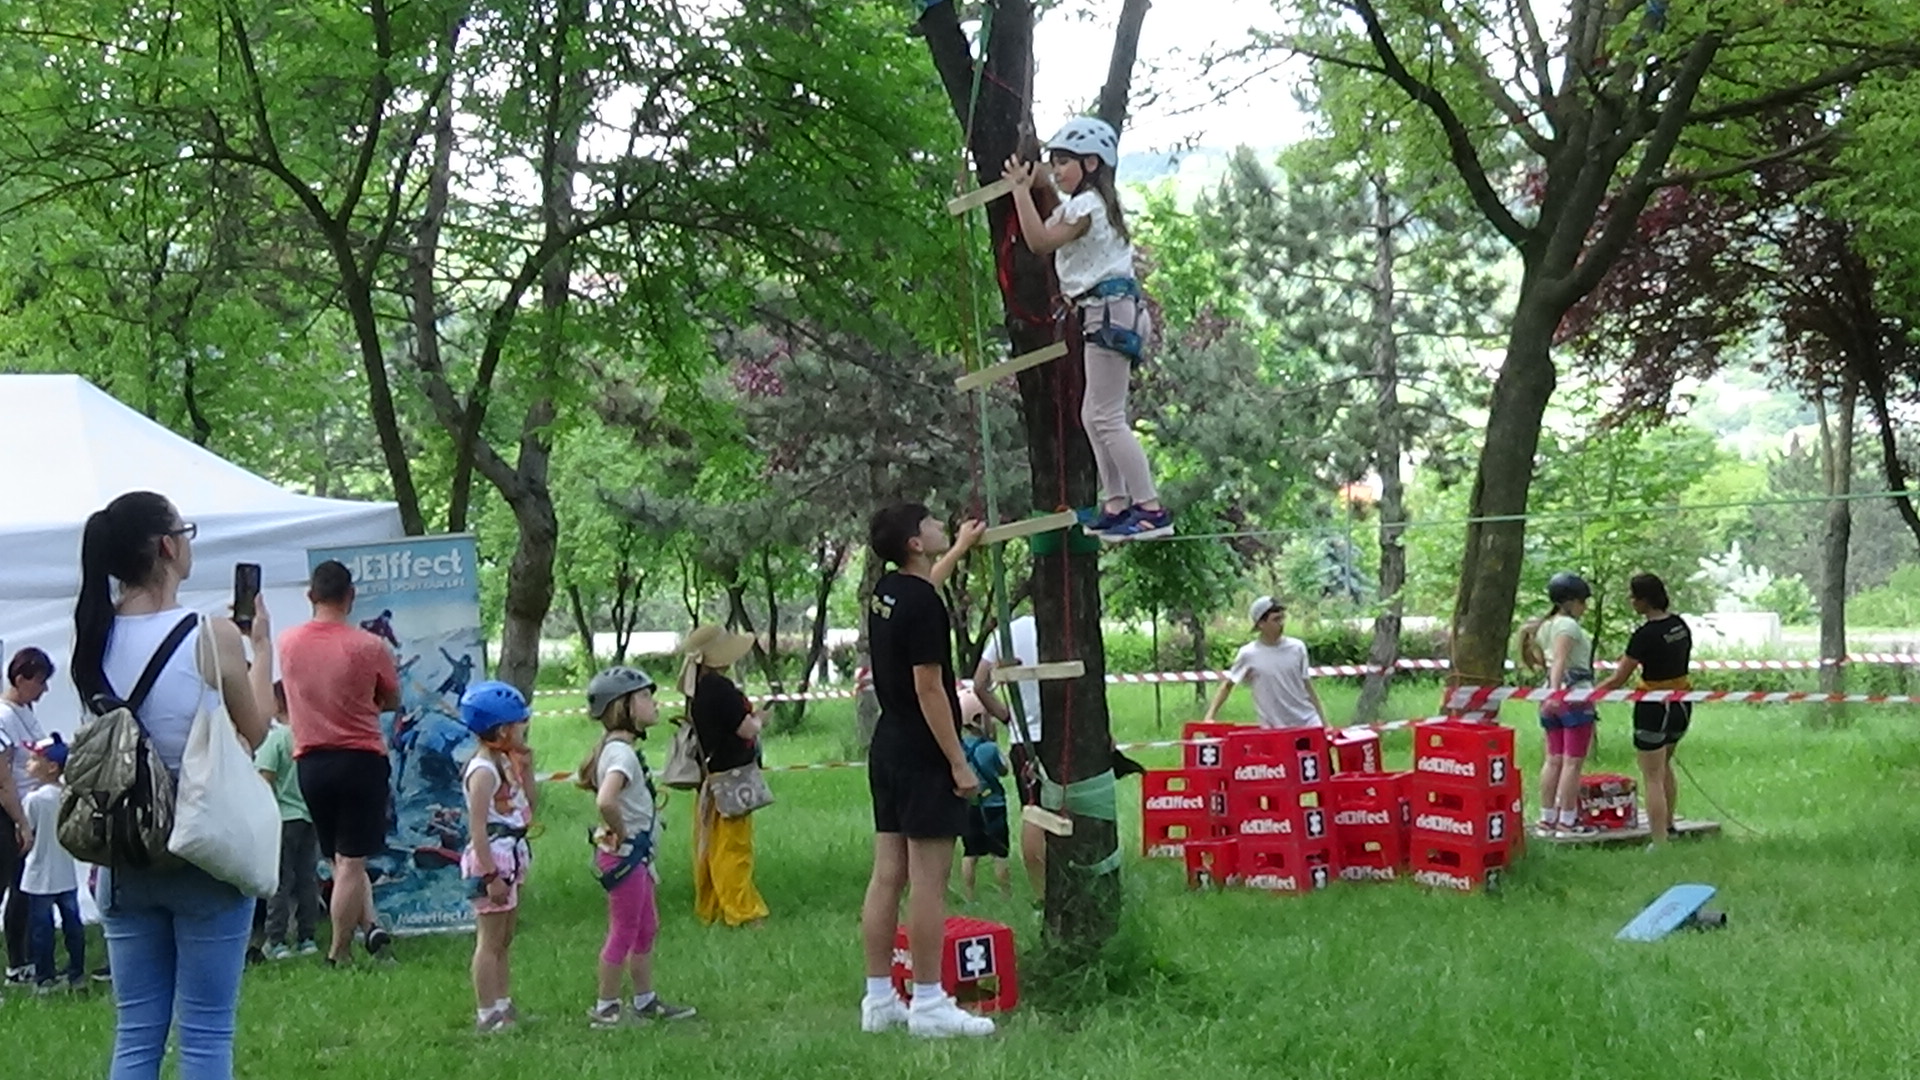 VIDEÓ – Ügyességi próba a Colina-parkban tartott gyermeknapon